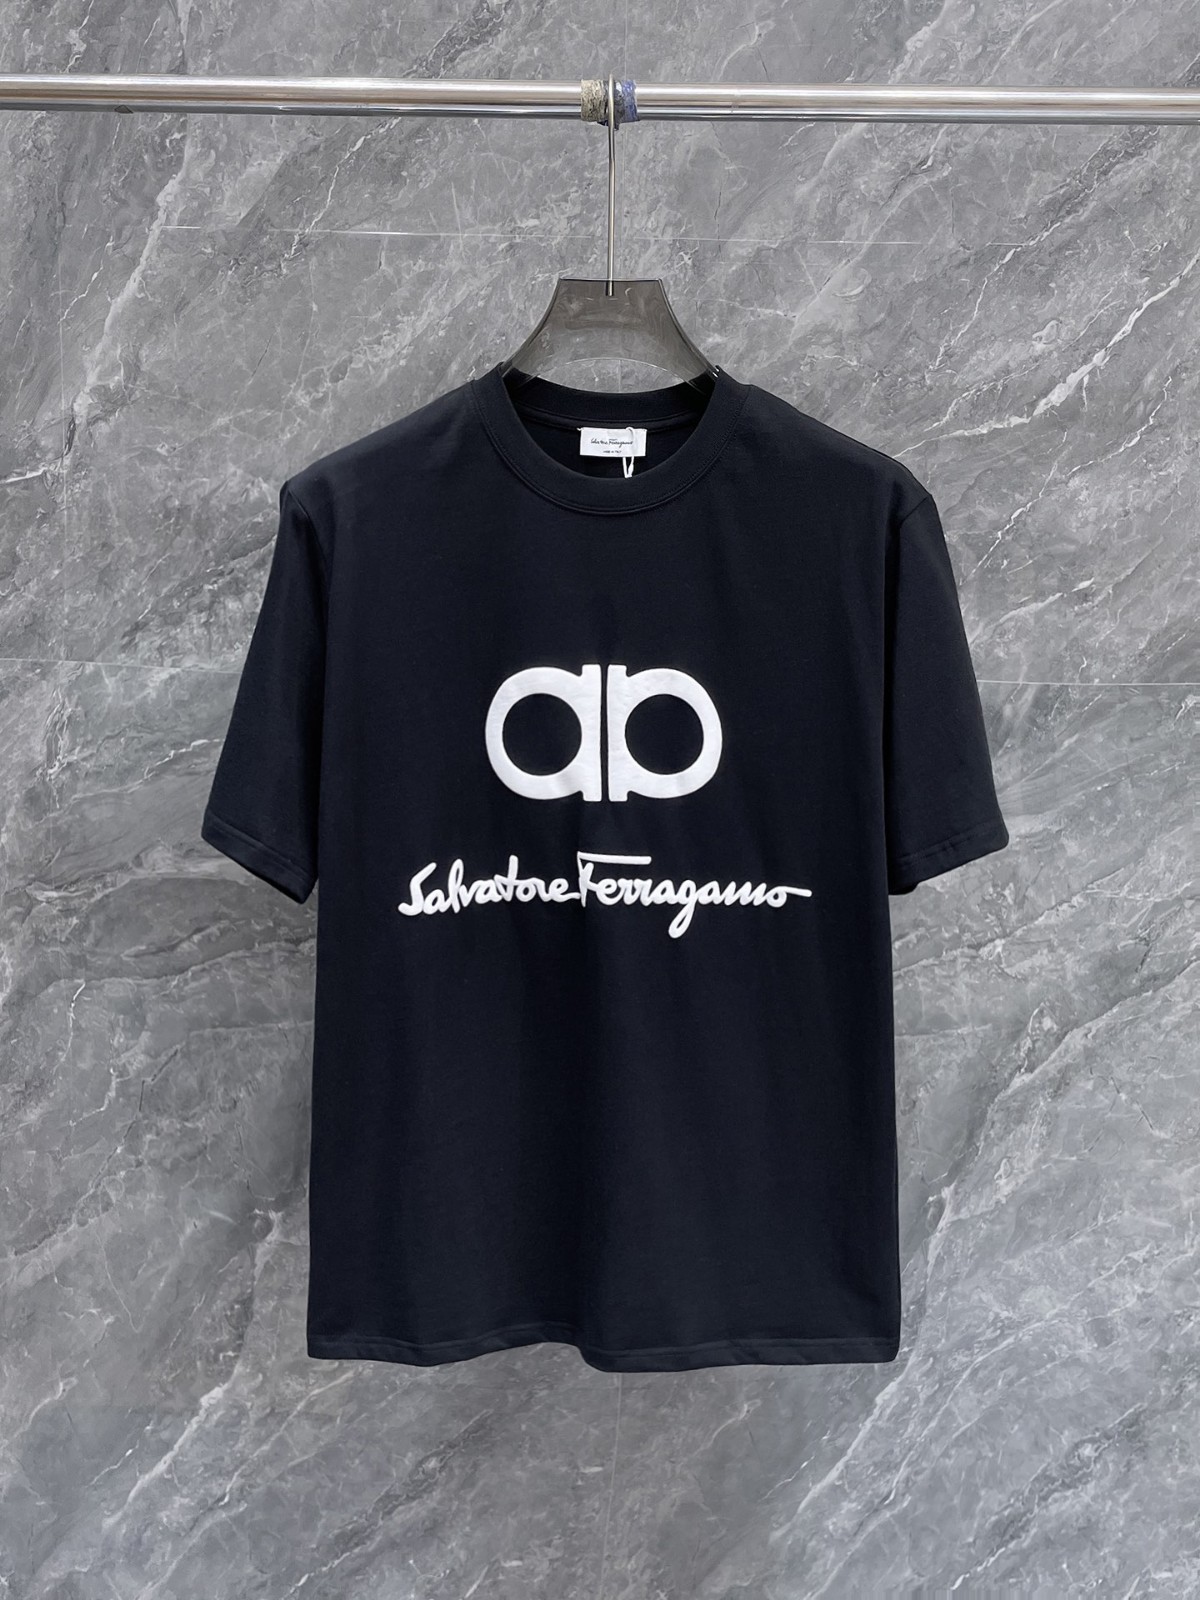 シンプル ロゴ入り クルーネックTシャツ サルヴァトーレ・フェラガモ 半袖Tシャツ コピー ブラック